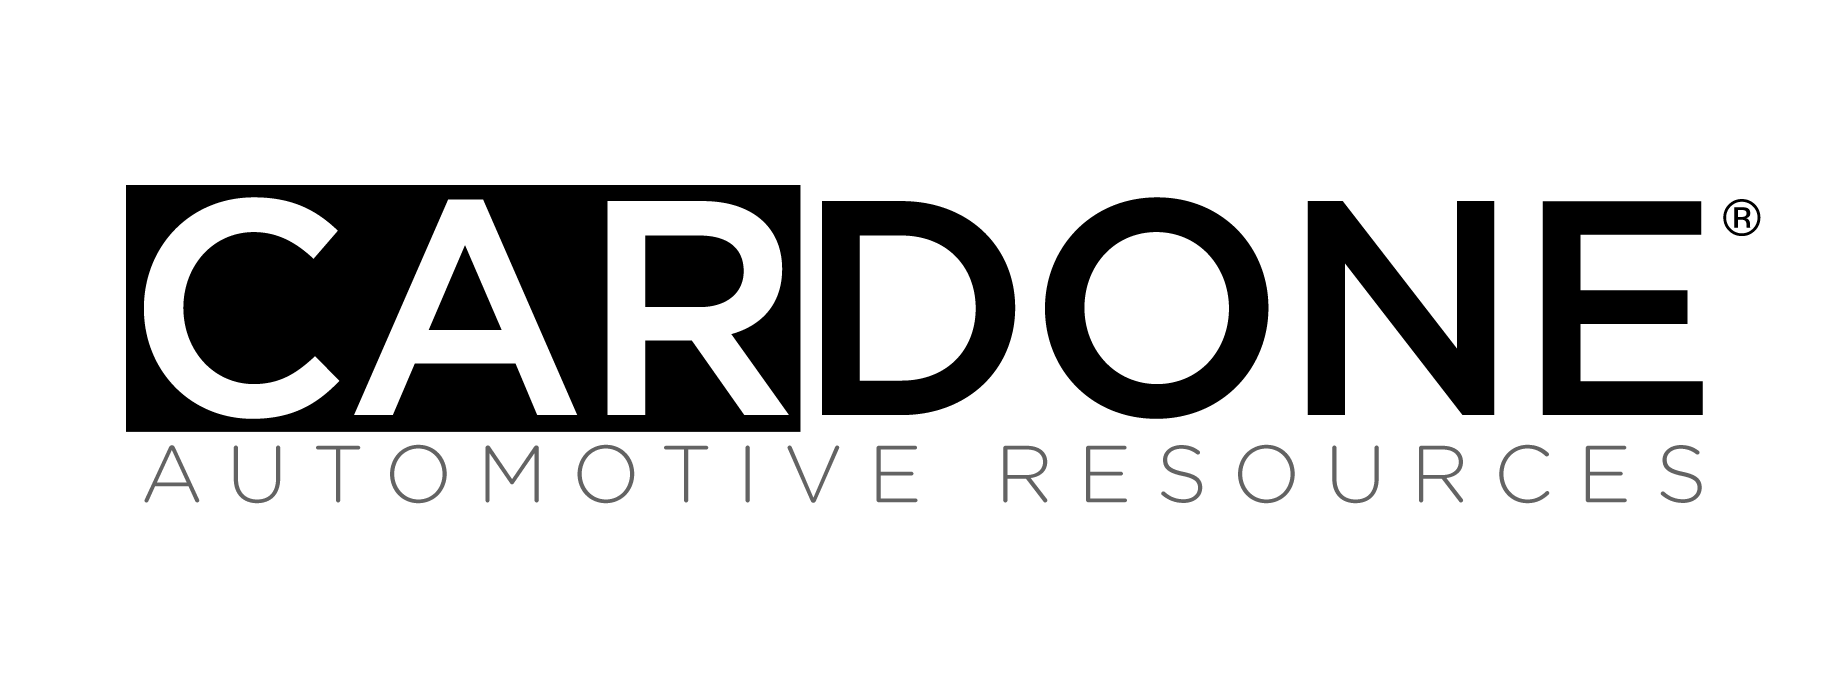 Cardone Logo - Cardone Automotive Resources Relaunches Brand with James Burton